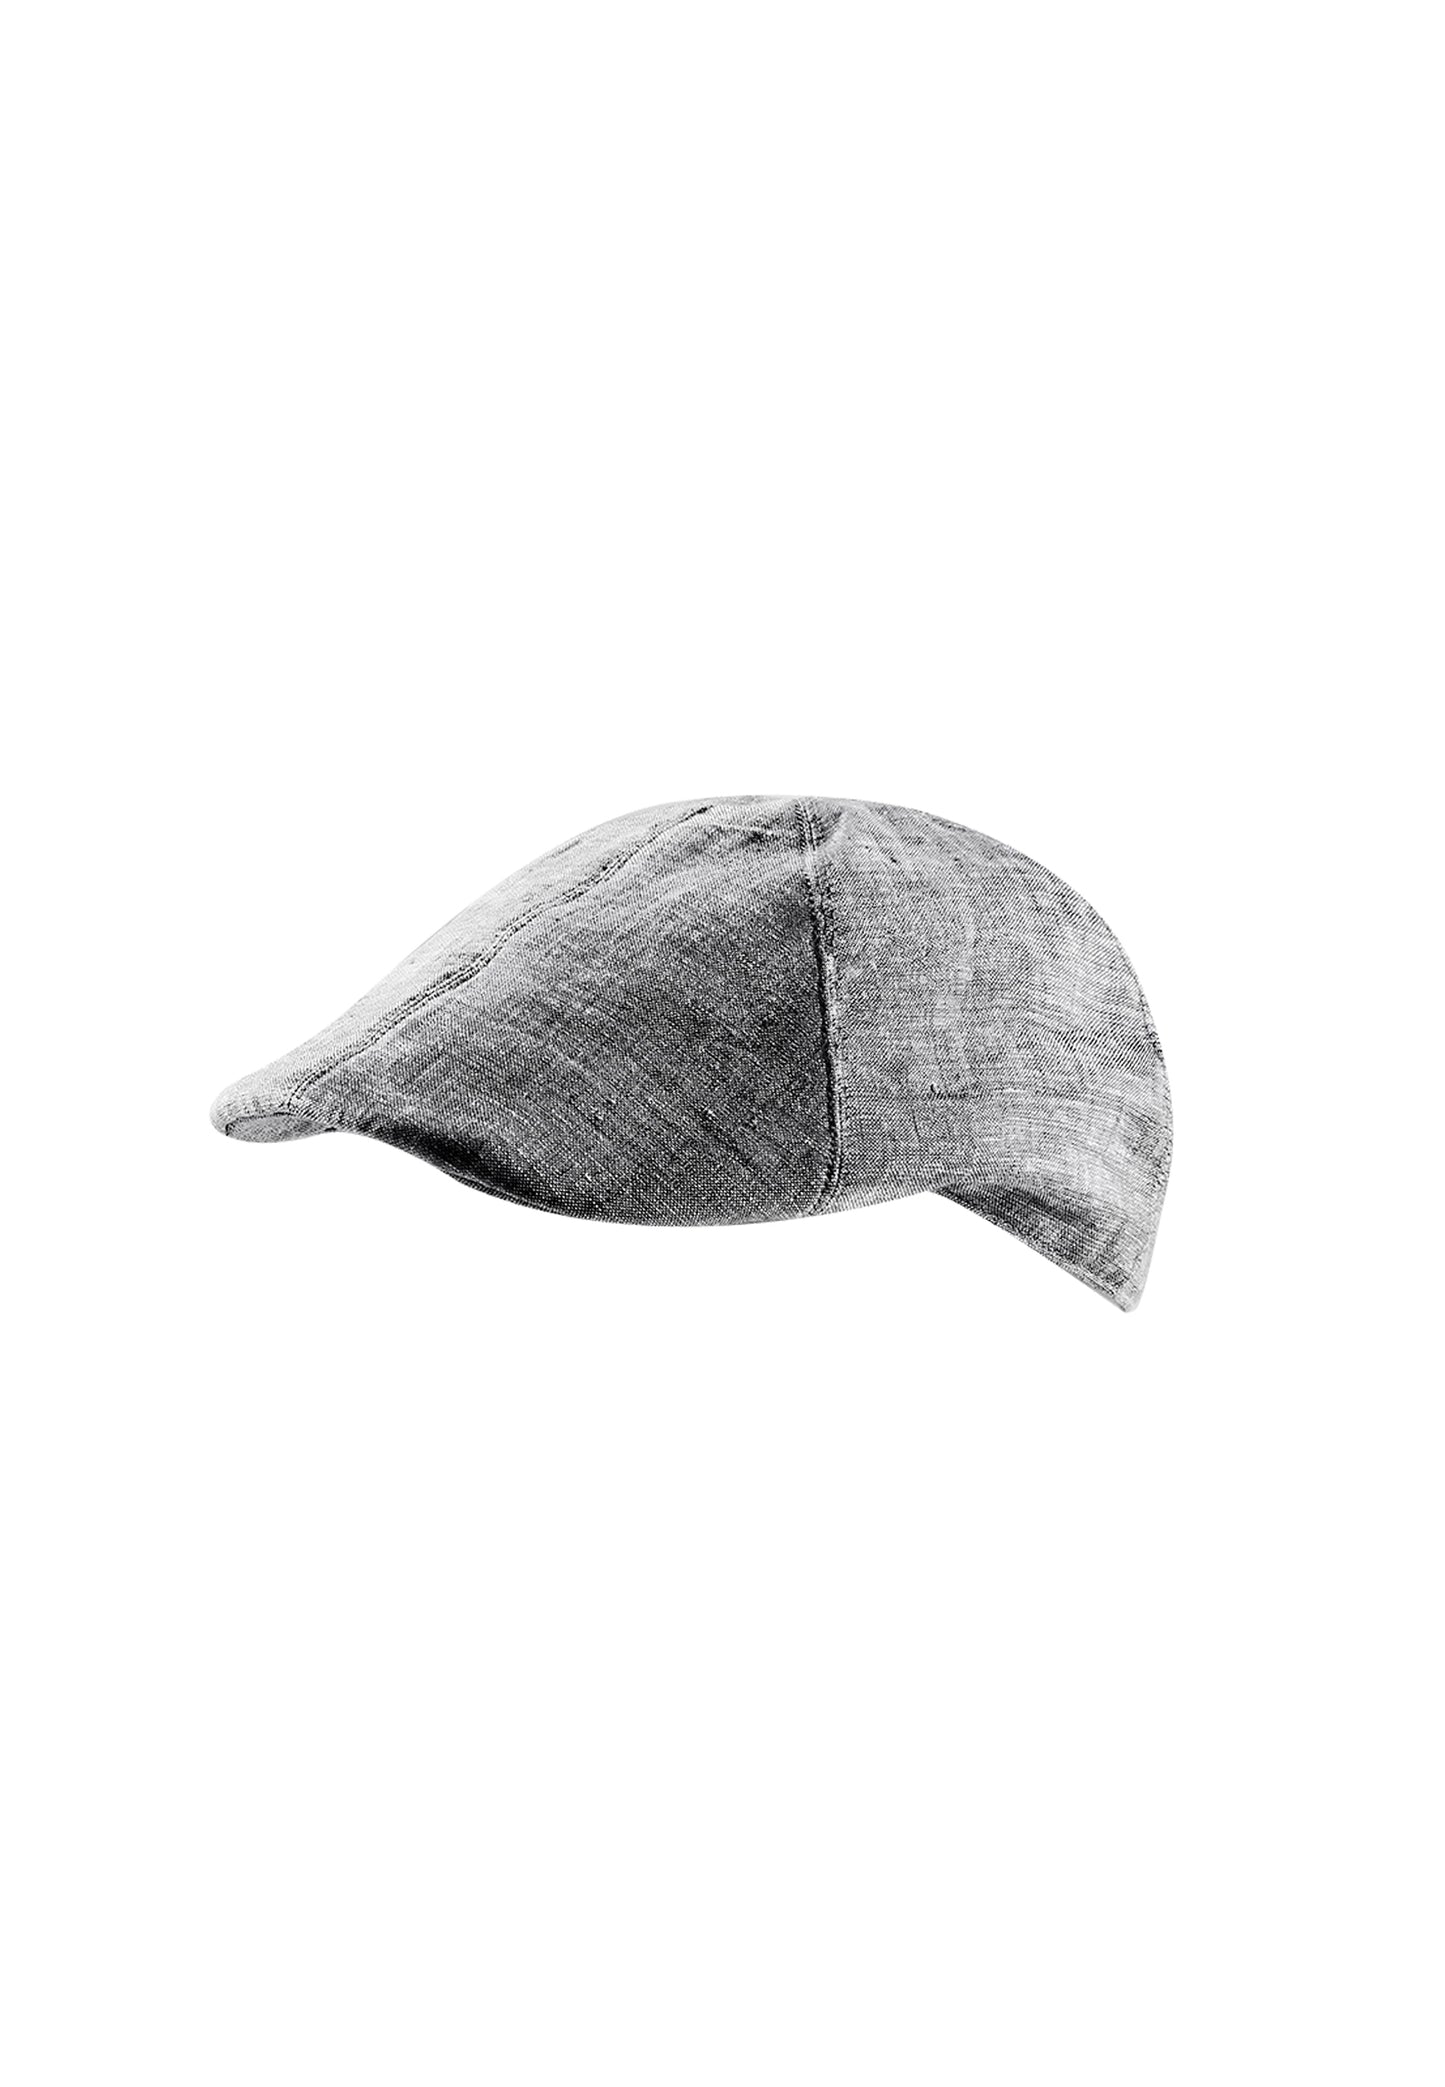 Gray flat cap in a sporty linen look